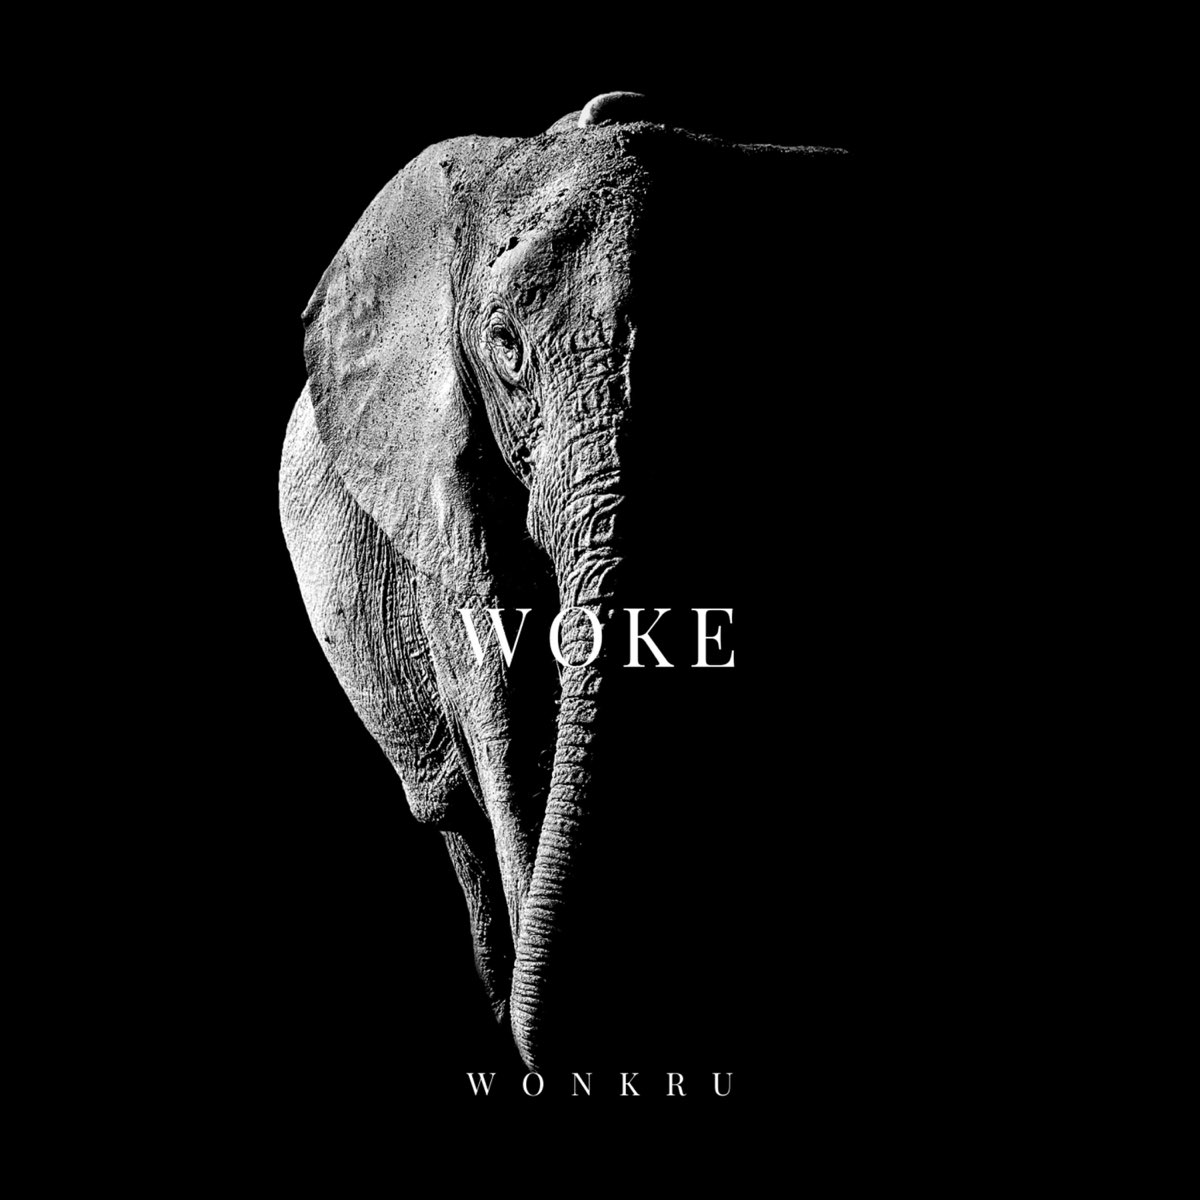 Wonkru – Woke